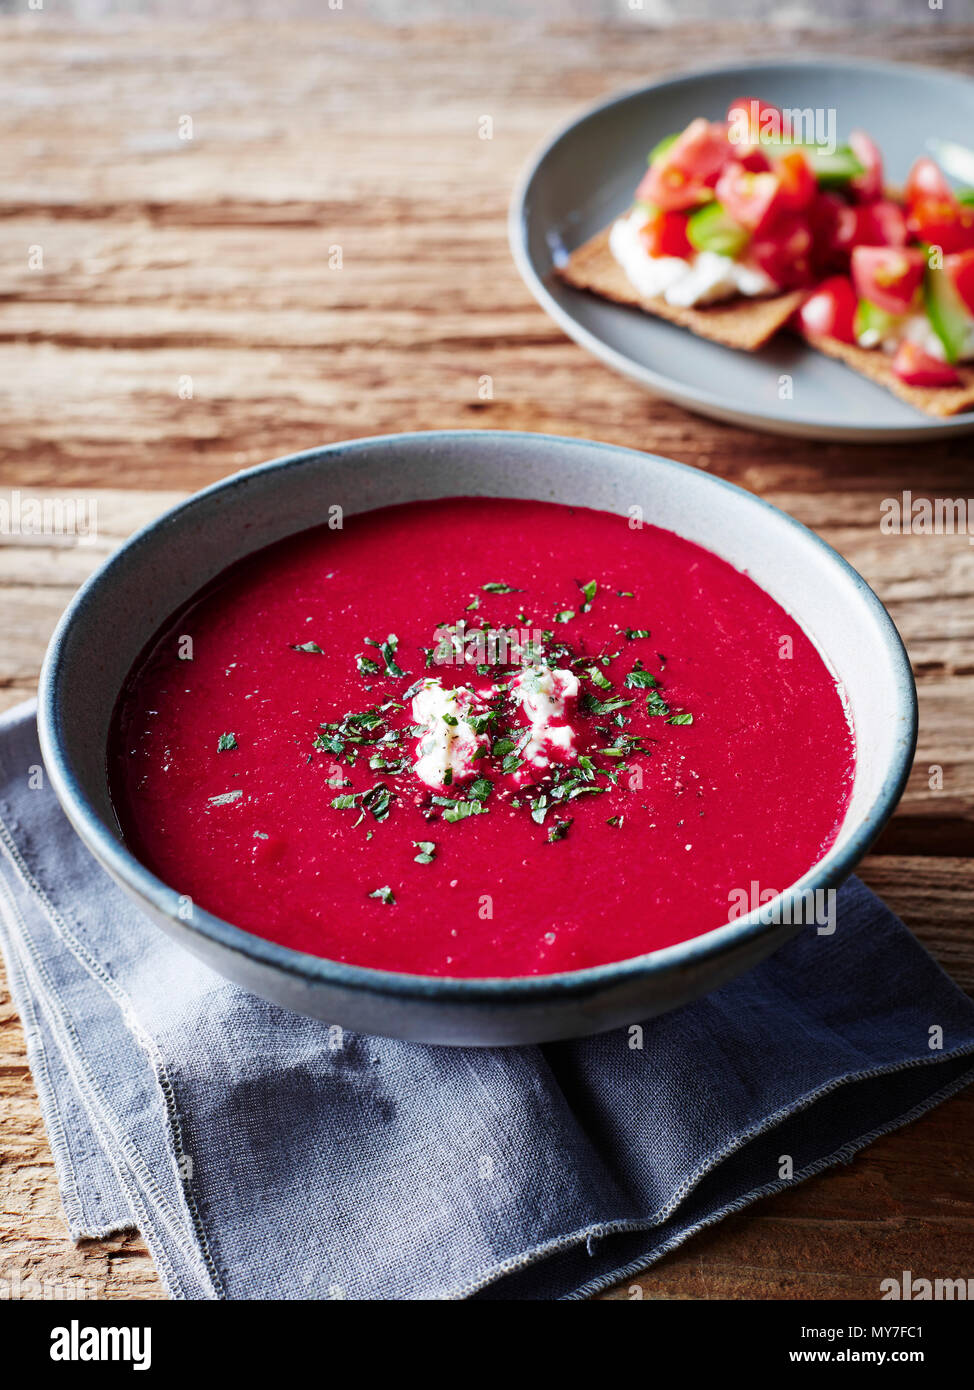 Bowl of borscht soup, close-up Stock Photo